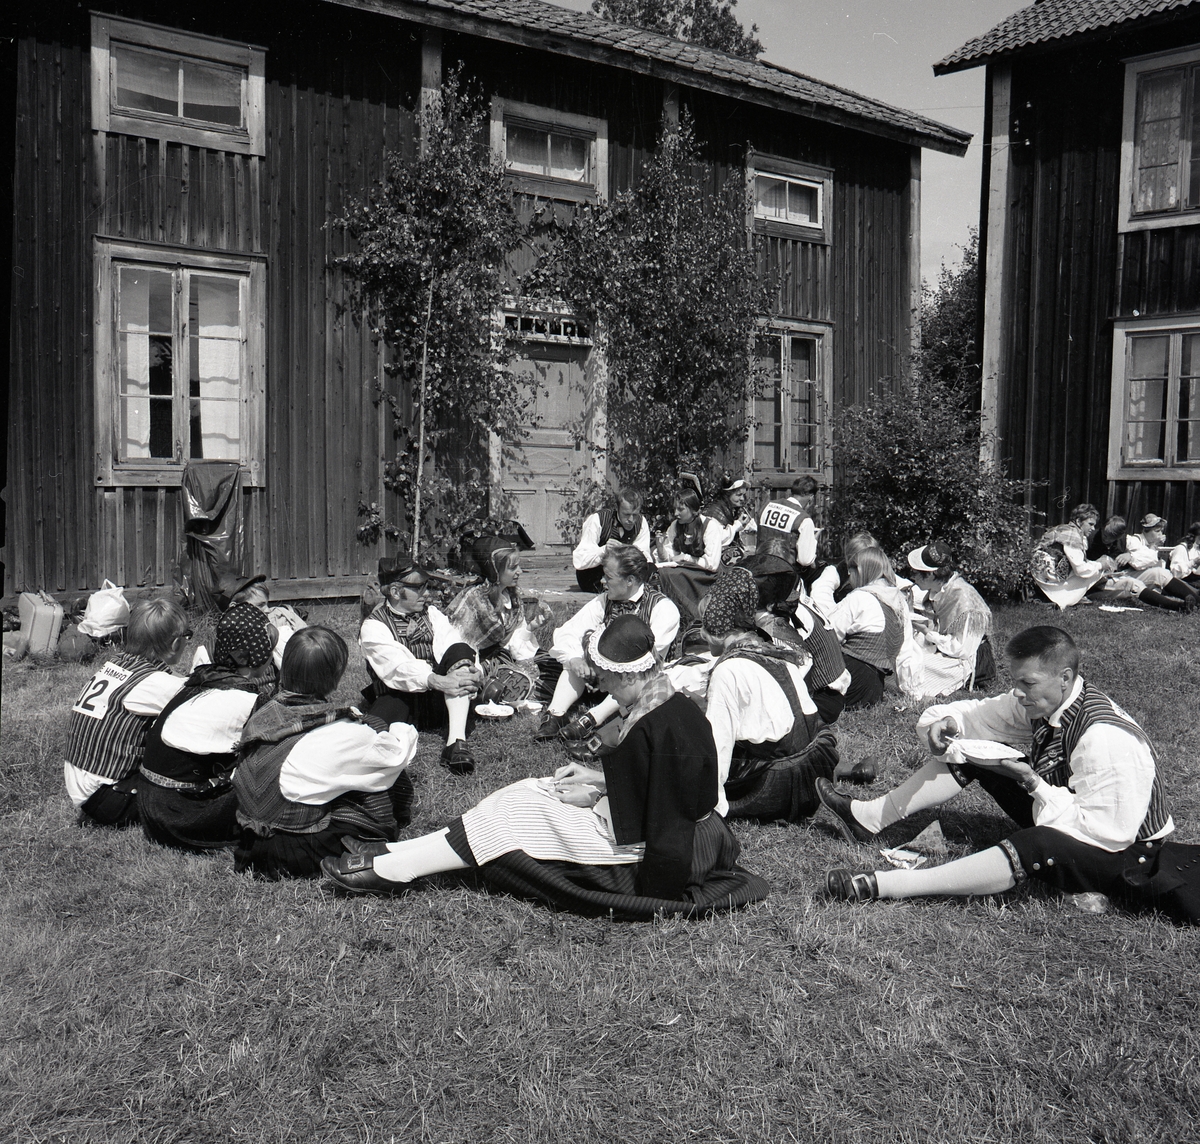 Deltagare i hälsingehambon tar en matrast i gräset, Hårga 1970.